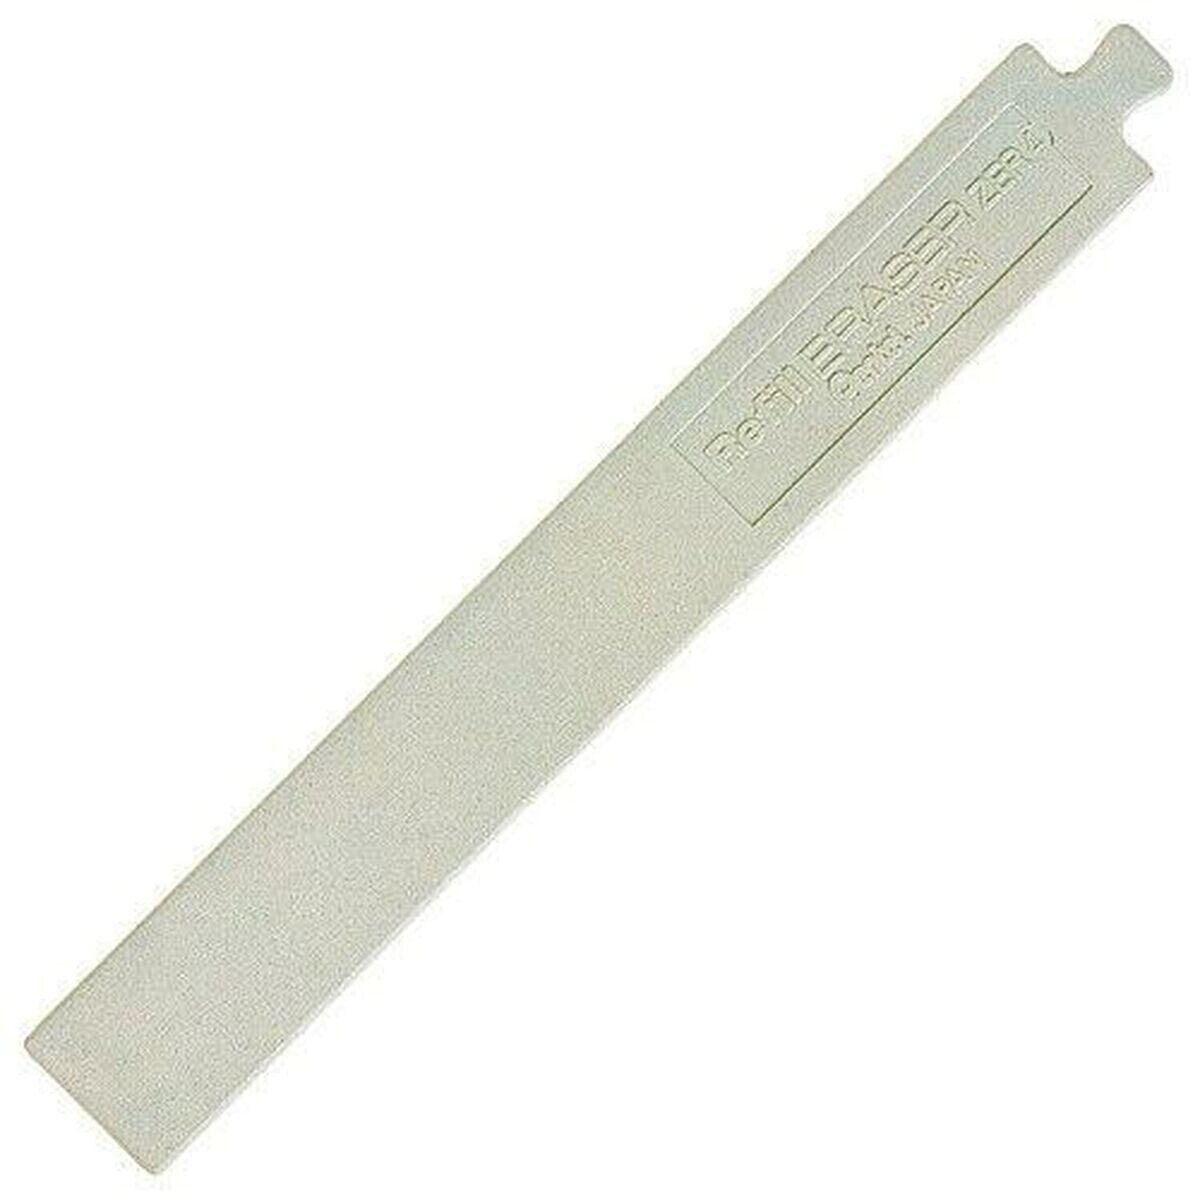 Replacement for Retractable rubber Pentel Clic Eraser Hyperaser Silver 12 Pieces